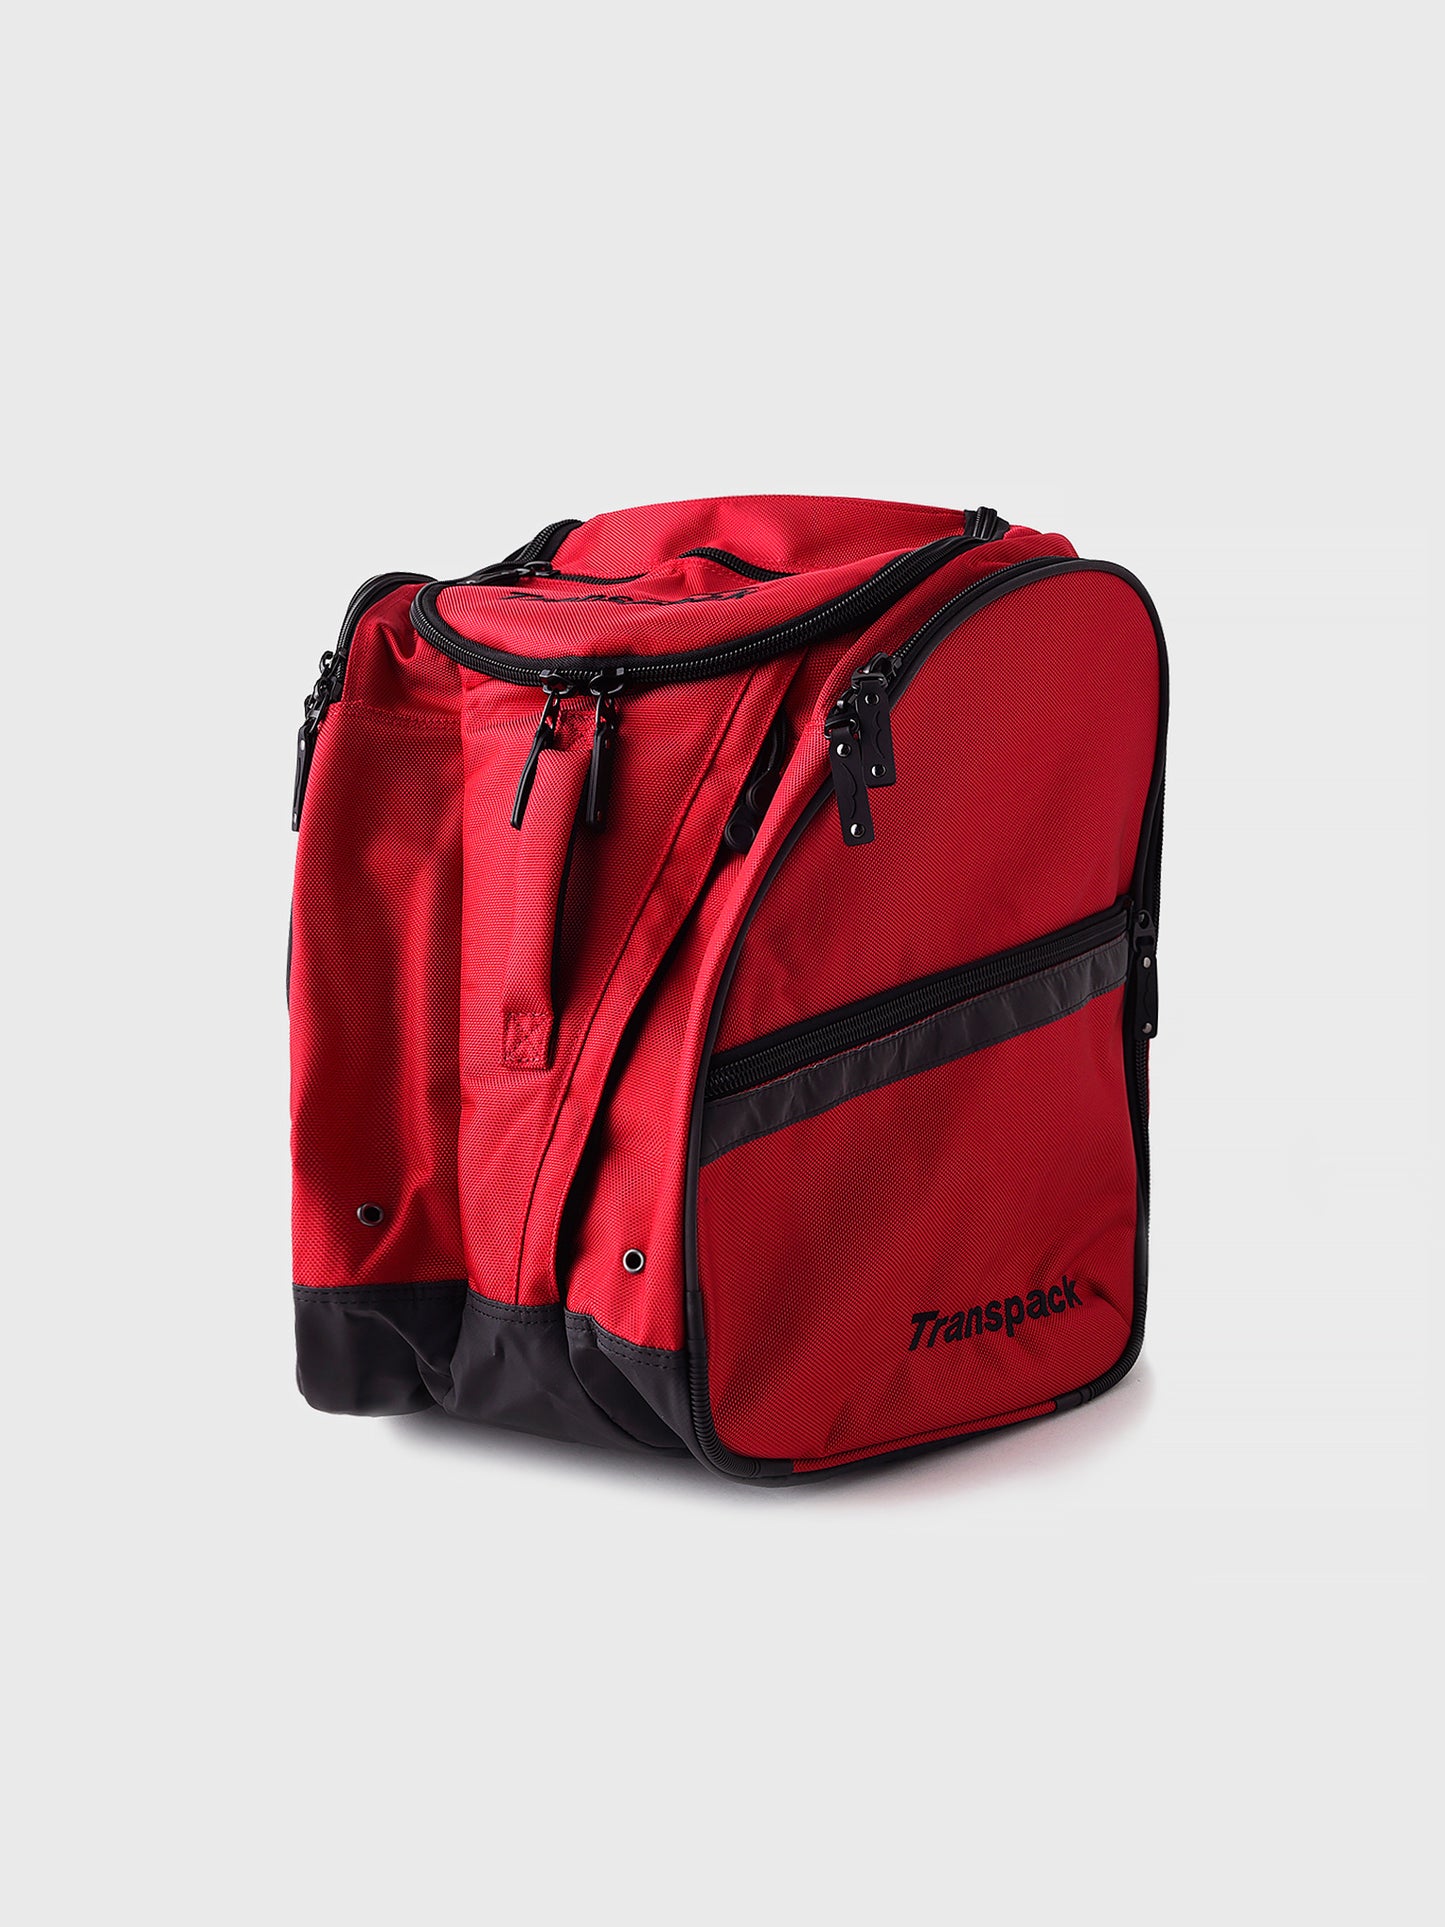 Transpack TRV Ballistic™ Pro Backpack